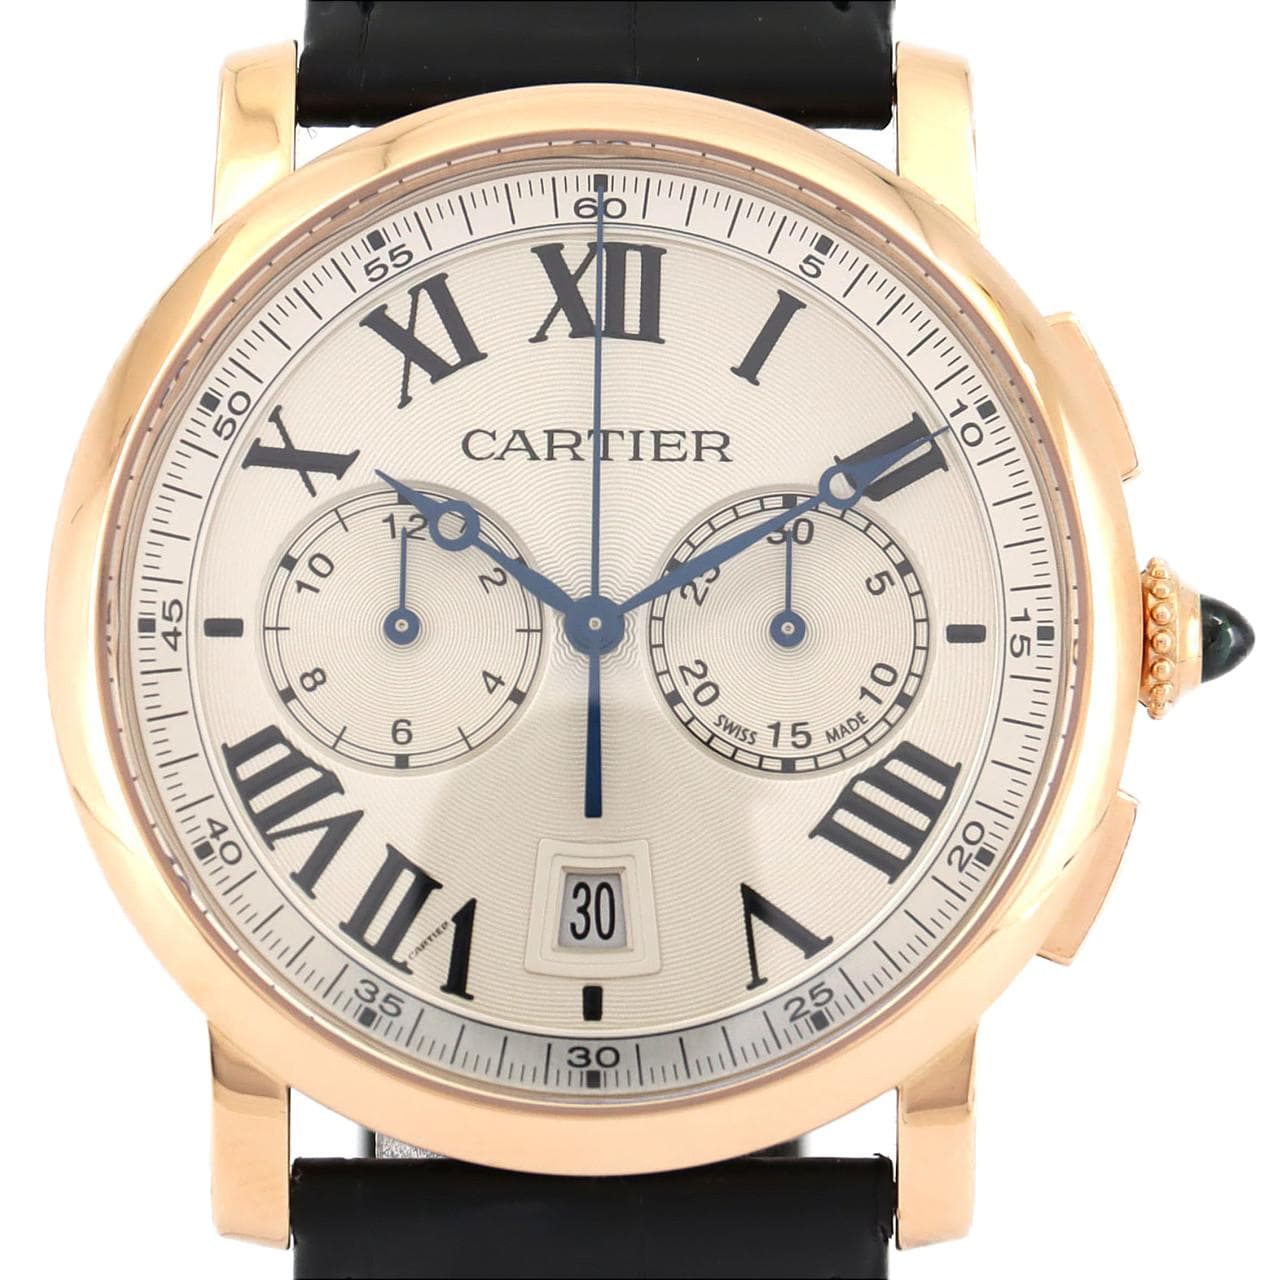 Cartier Chrono de Cartier Chrono PG W1556238 PG/RG Automatic